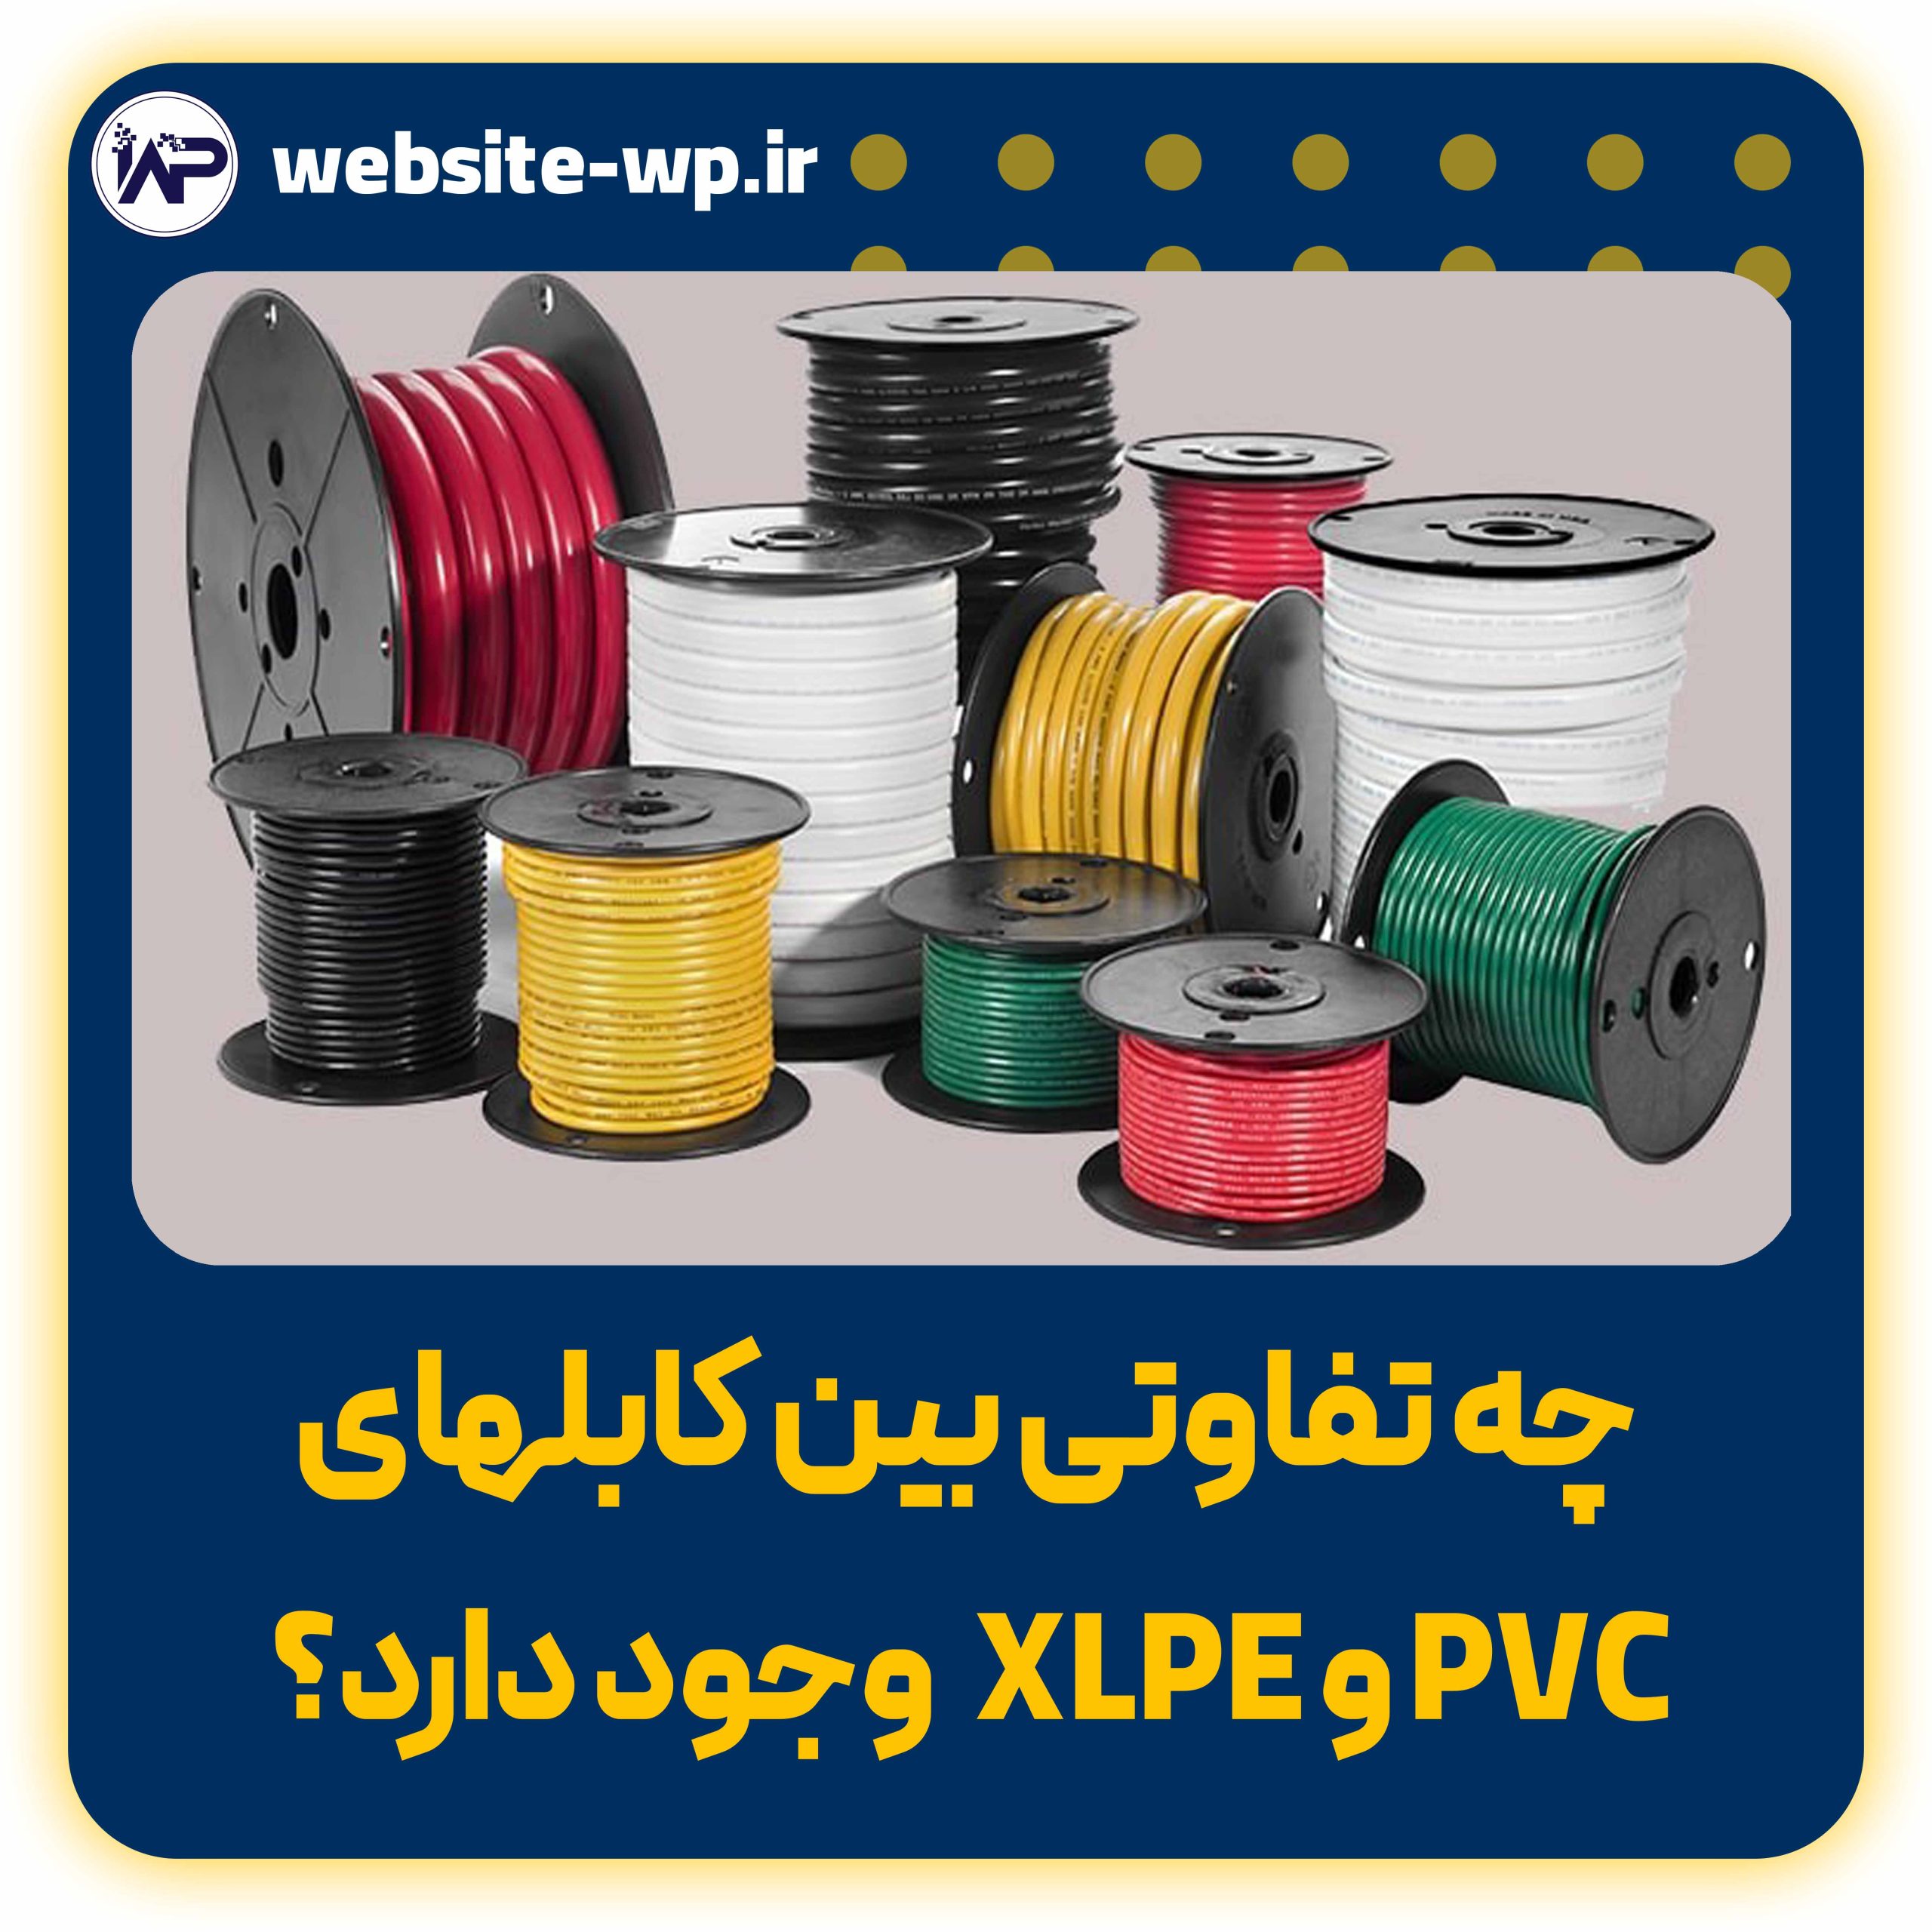 چه تفاوتی بین کابلهای XLPE و PVC وجود دارد؟